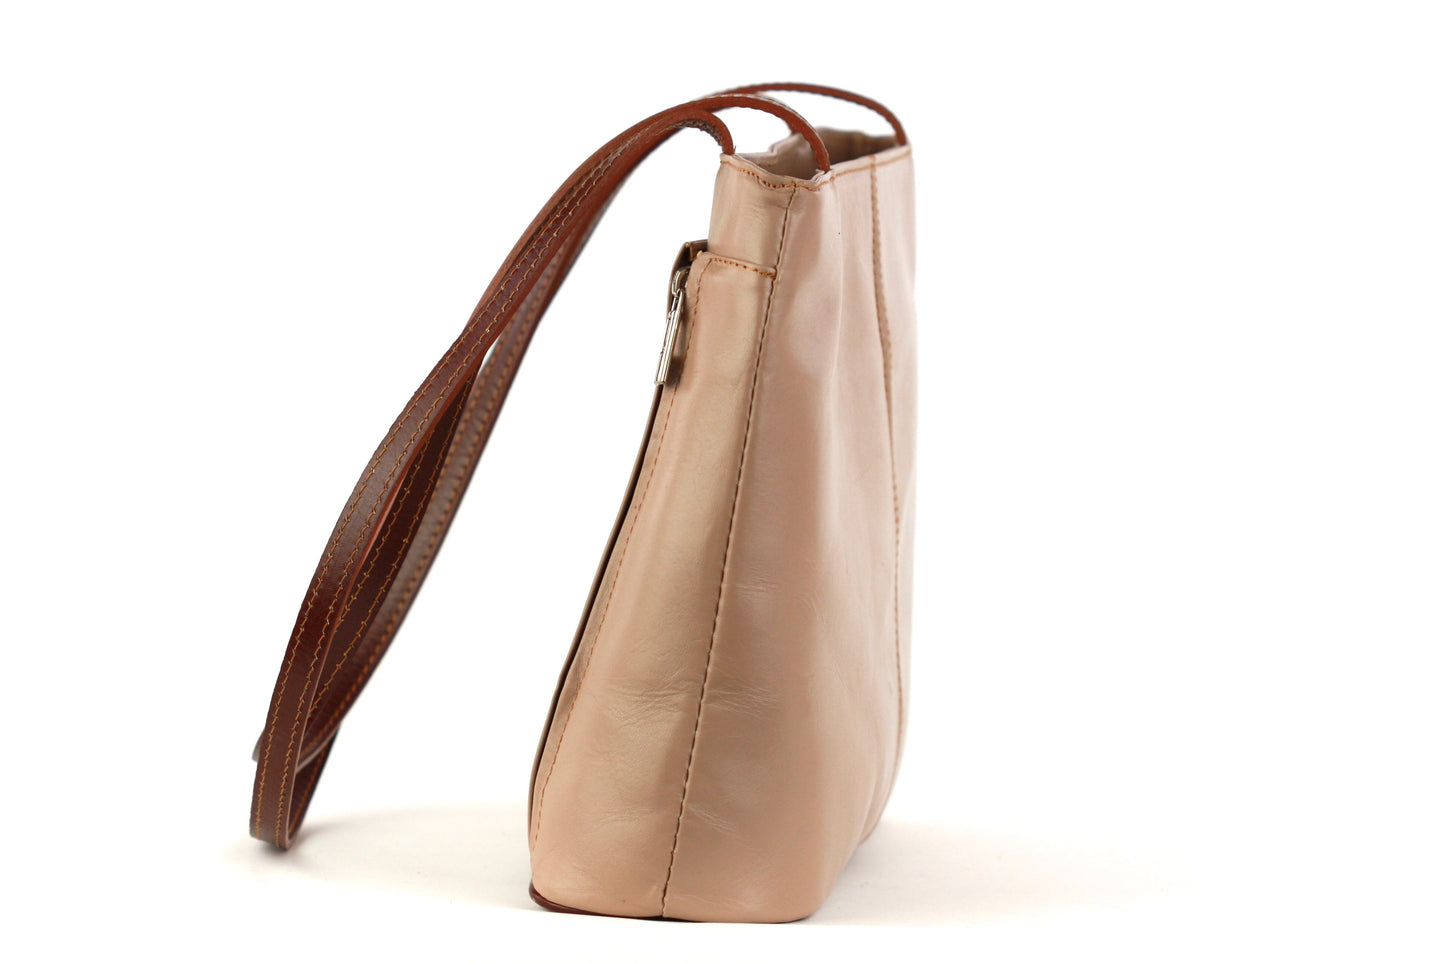 Ludovica handbag in tan